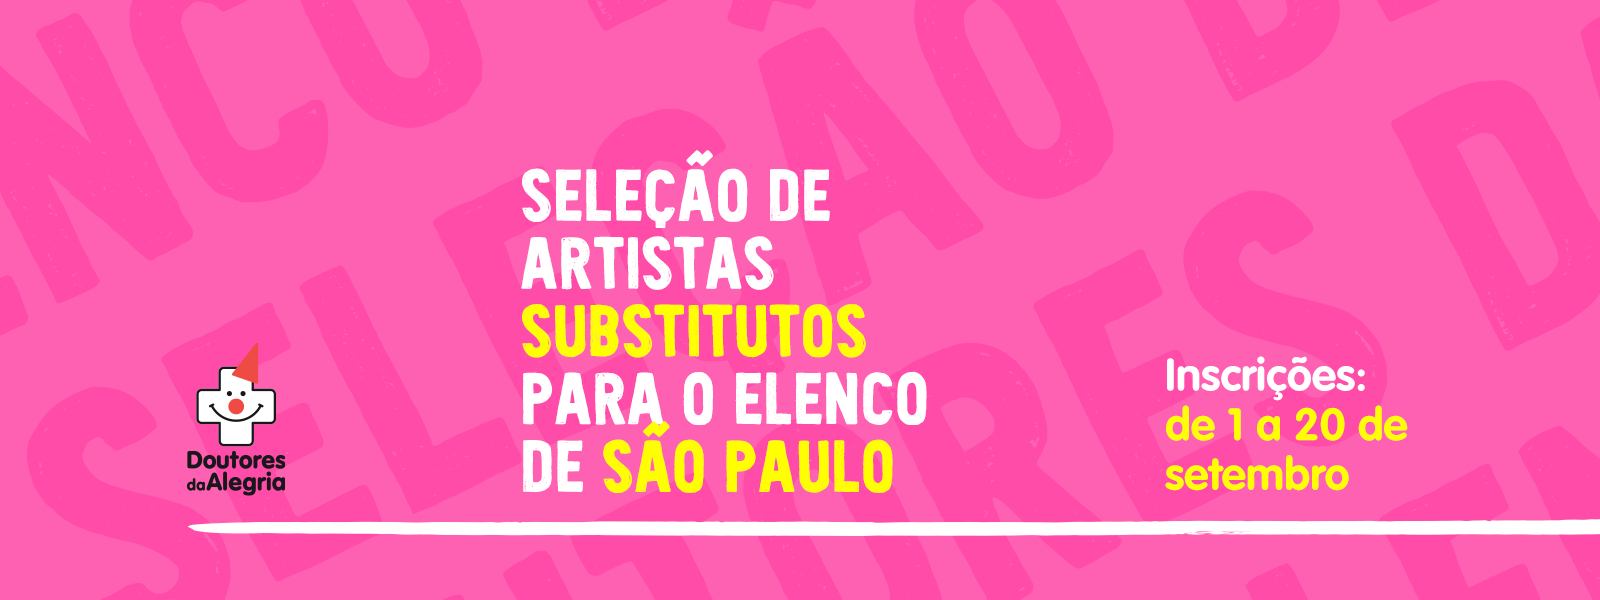 Doutores da Alegria abre seleção para artistas substitutos em São Paulo